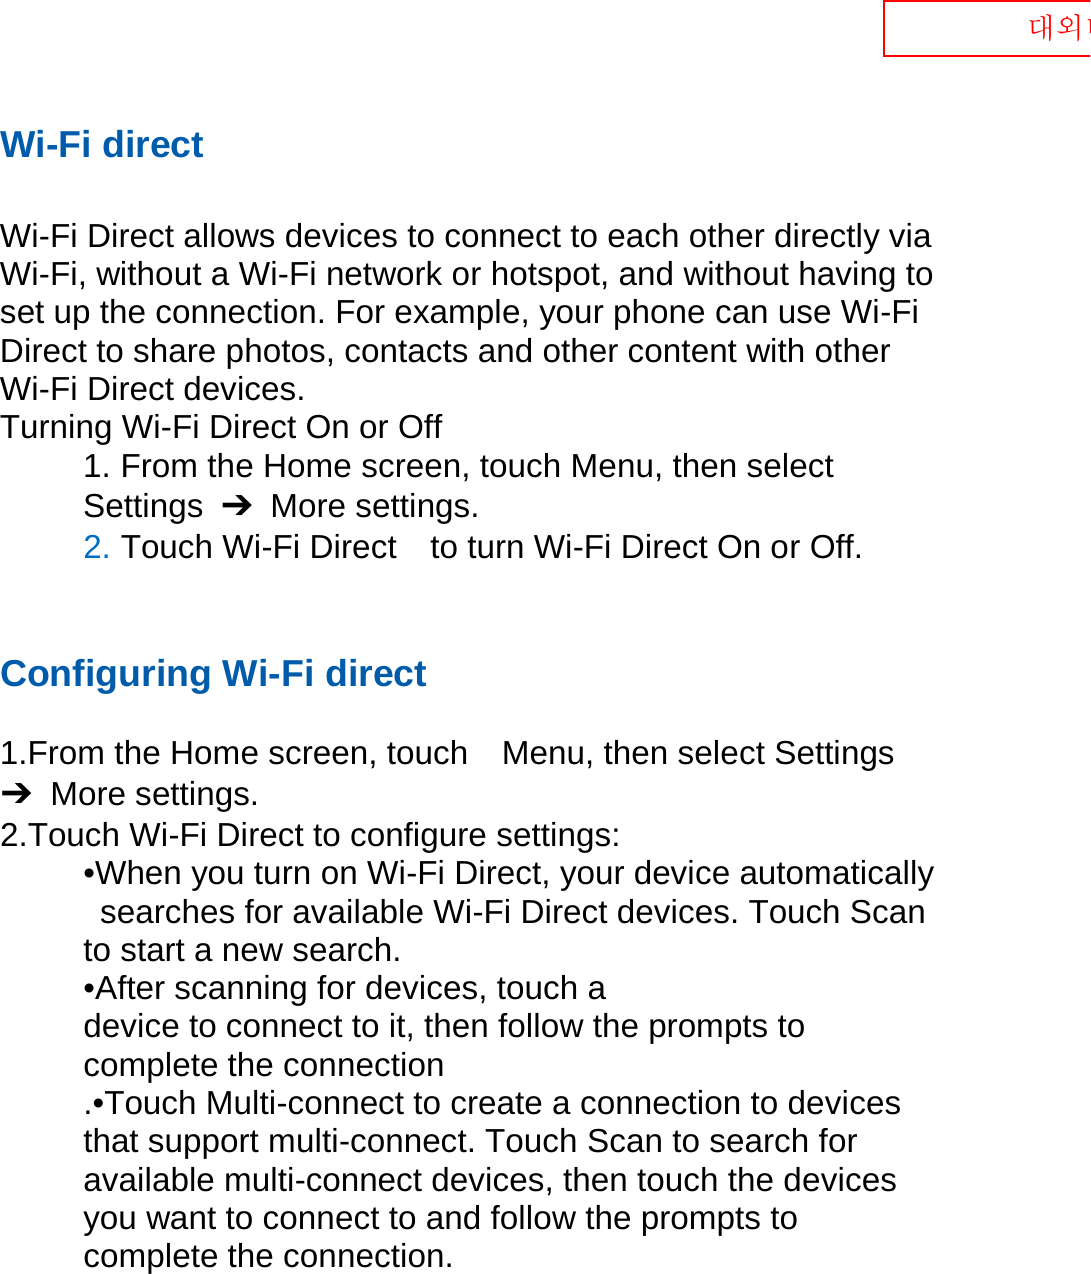  대외비 Wi-Fi direct  Wi-Fi Direct allows devices to connect to each other directly via Wi-Fi, without a Wi-Fi network or hotspot, and without having to set up the connection. For example, your phone can use Wi-Fi Direct to share photos, contacts and other content with other Wi-Fi Direct devices.   Turning Wi-Fi Direct On or Off 1. From the Home screen, touch Menu, then select   Settings  ➔  More settings. 2. Touch Wi-Fi Direct    to turn Wi-Fi Direct On or Off.   Configuring Wi-Fi direct    1.From the Home screen, touch    Menu, then select Settings ➔  More settings. 2.Touch Wi-Fi Direct to configure settings:   •When you turn on Wi-Fi Direct, your device automatically   searches for available Wi-Fi Direct devices. Touch Scan   to start a new search. •After scanning for devices, touch a   device to connect to it, then follow the prompts to   complete the connection .•Touch Multi-connect to create a connection to devices that support multi-connect. Touch Scan to search for available multi-connect devices, then touch the devices you want to connect to and follow the prompts to complete the connection.